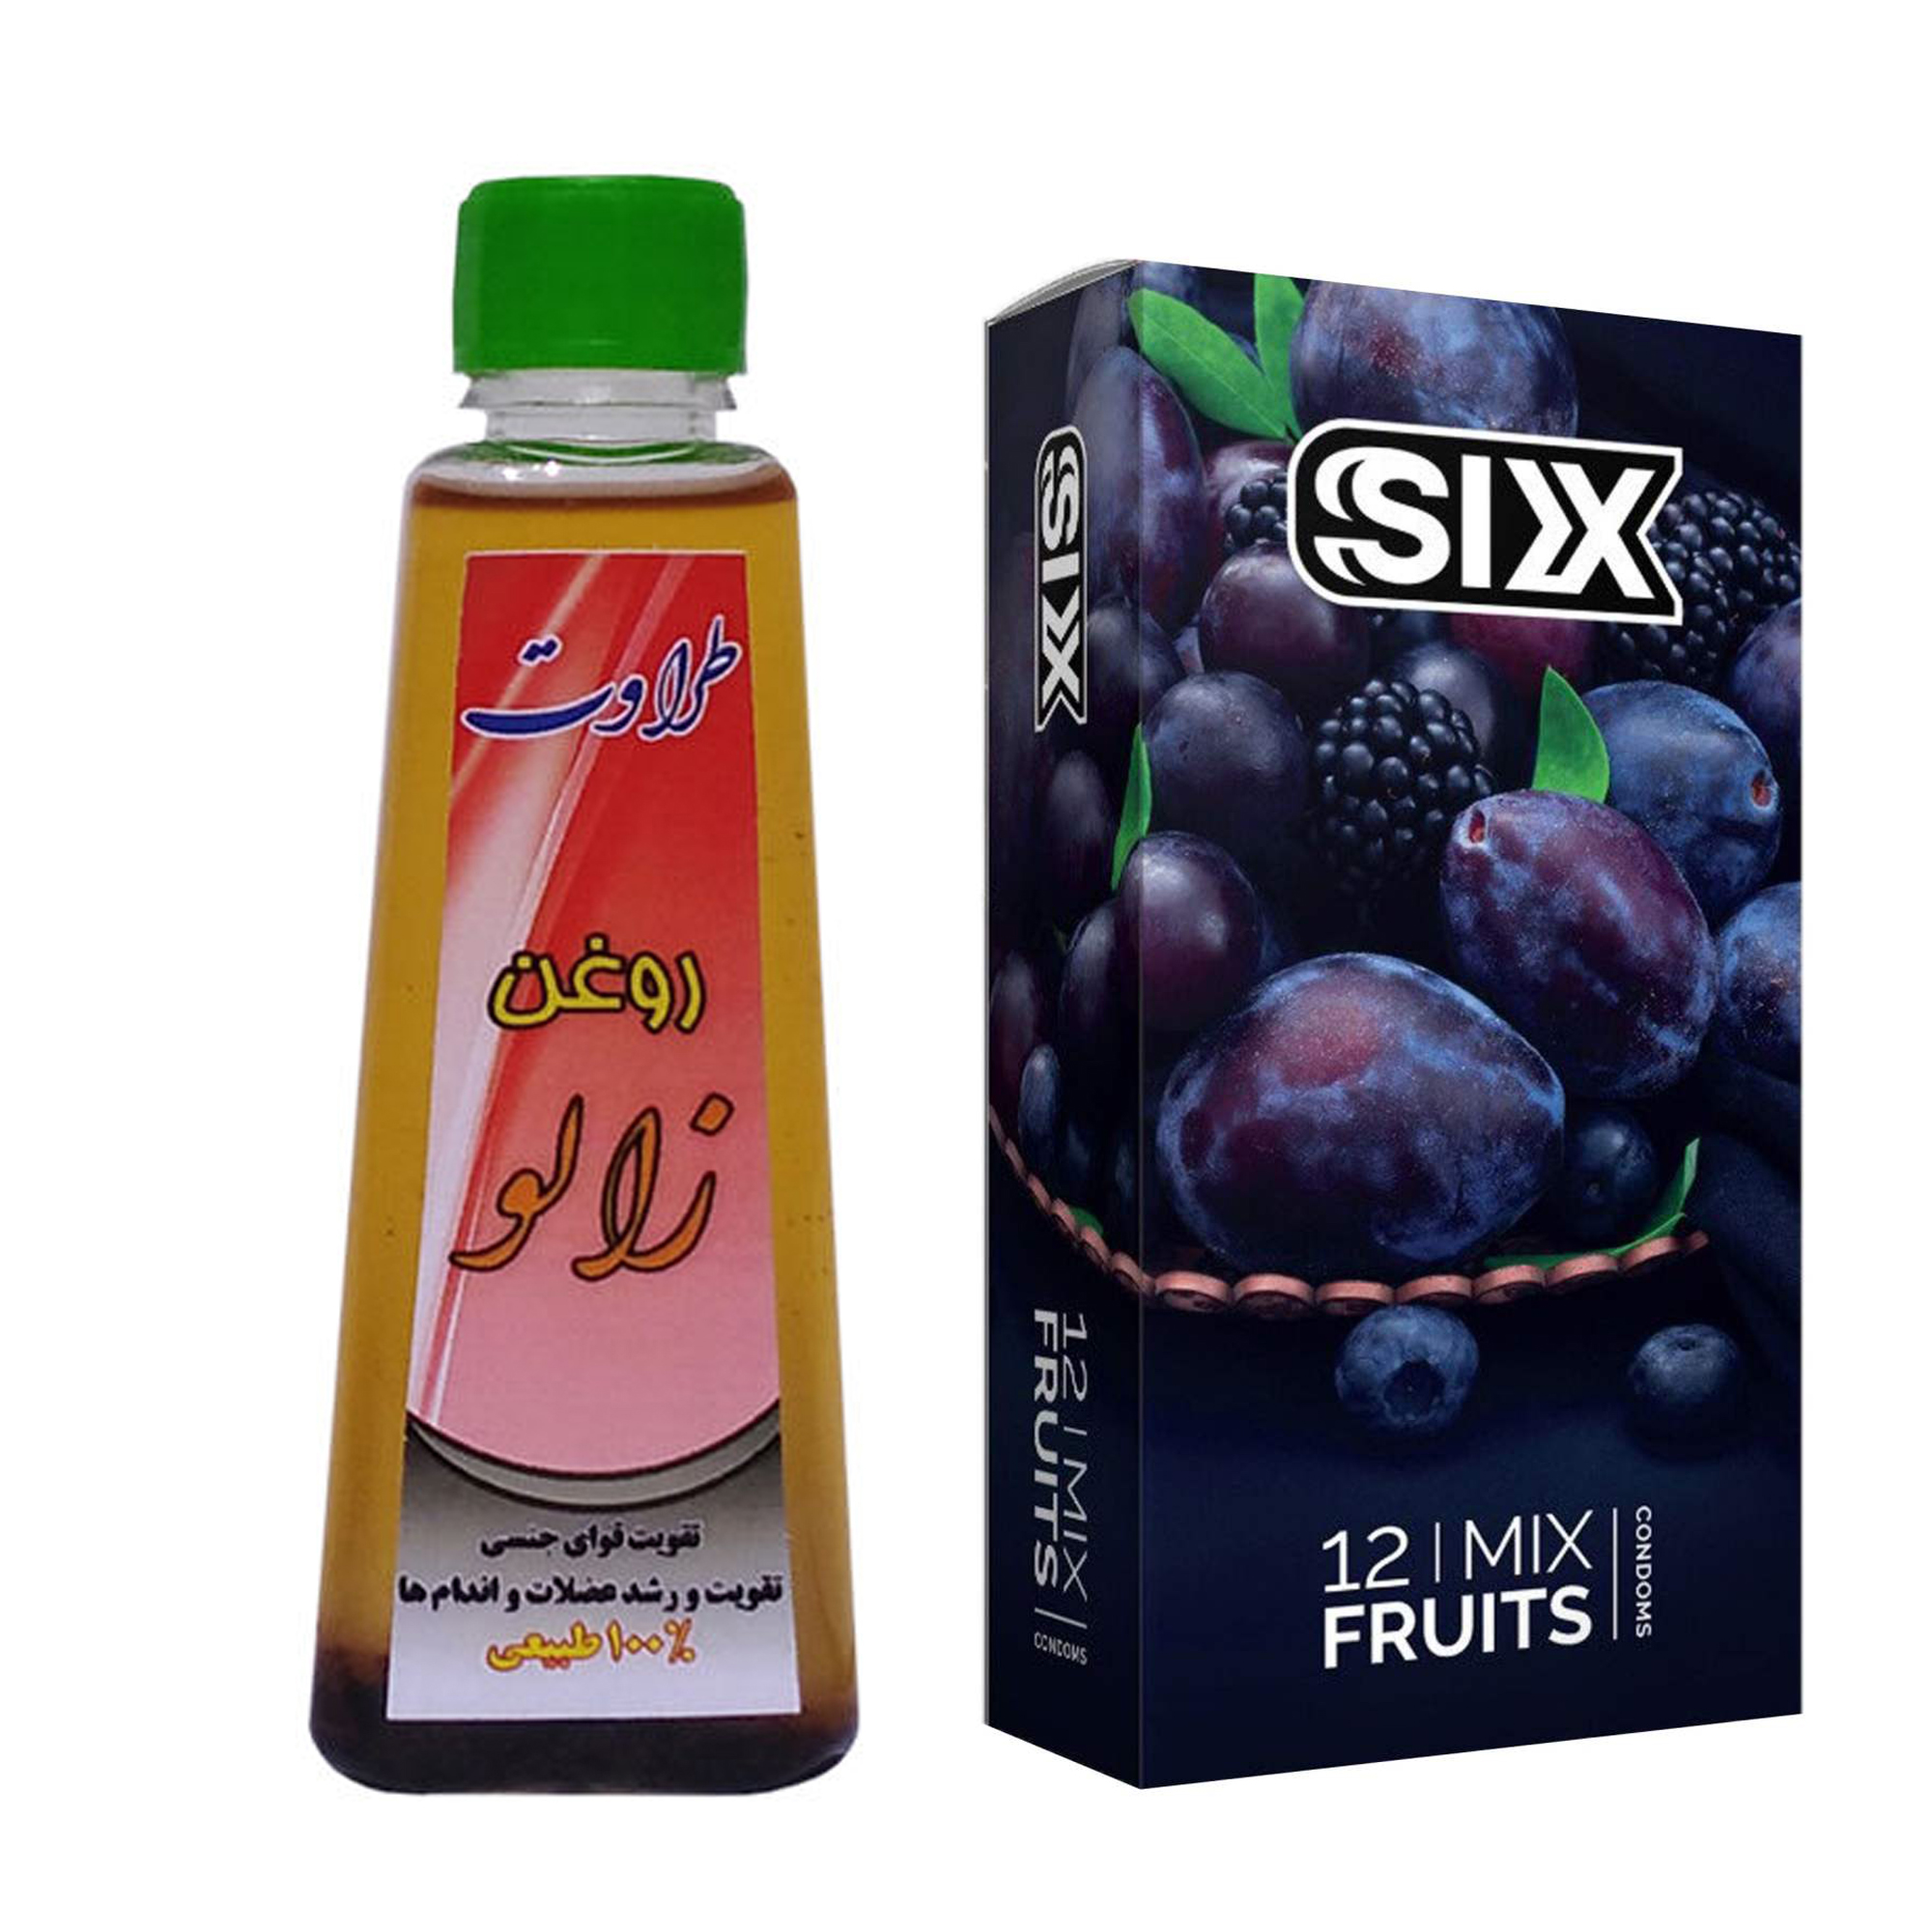 کاندوم سیکس مدل Mix Fruits بسته 12 عددی به همراه روغن زالو طراوت کد 60 حجم 60 میلی لیتر